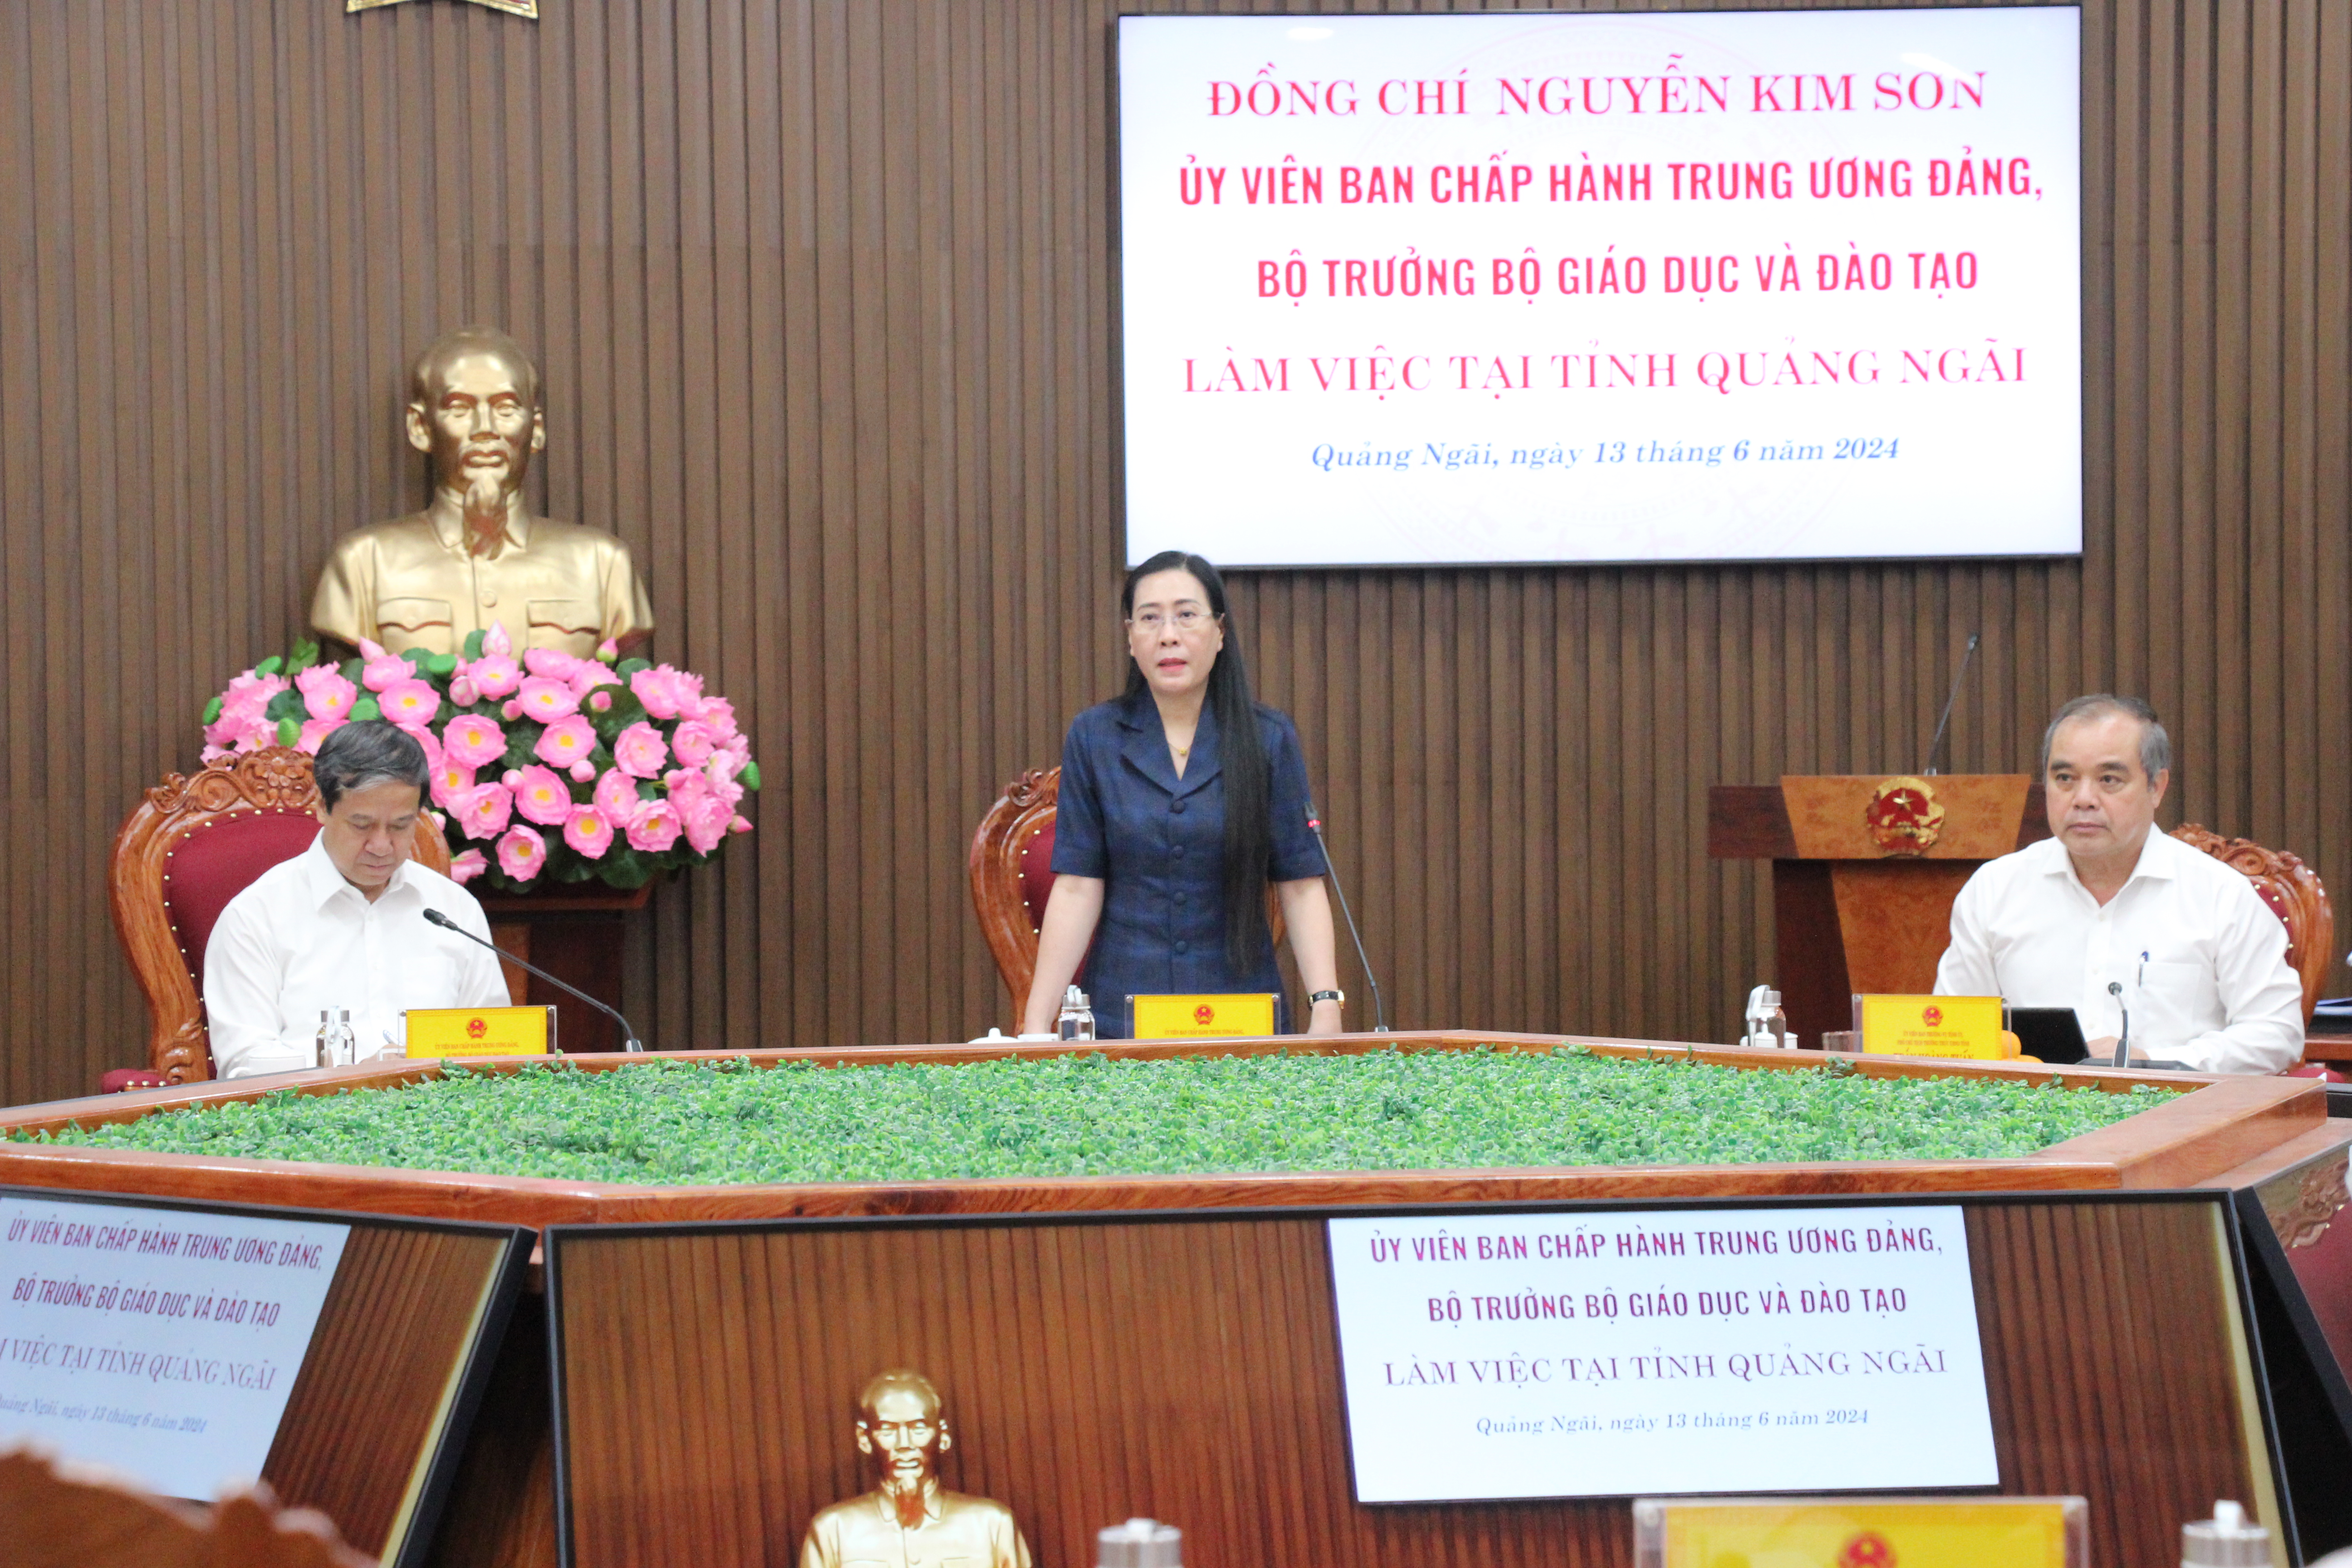 Bà Bùi Thị Quỳnh Vân, Bí thư Tỉnh uỷ Quảng Ngãi thông tin tại buổi làm việc.